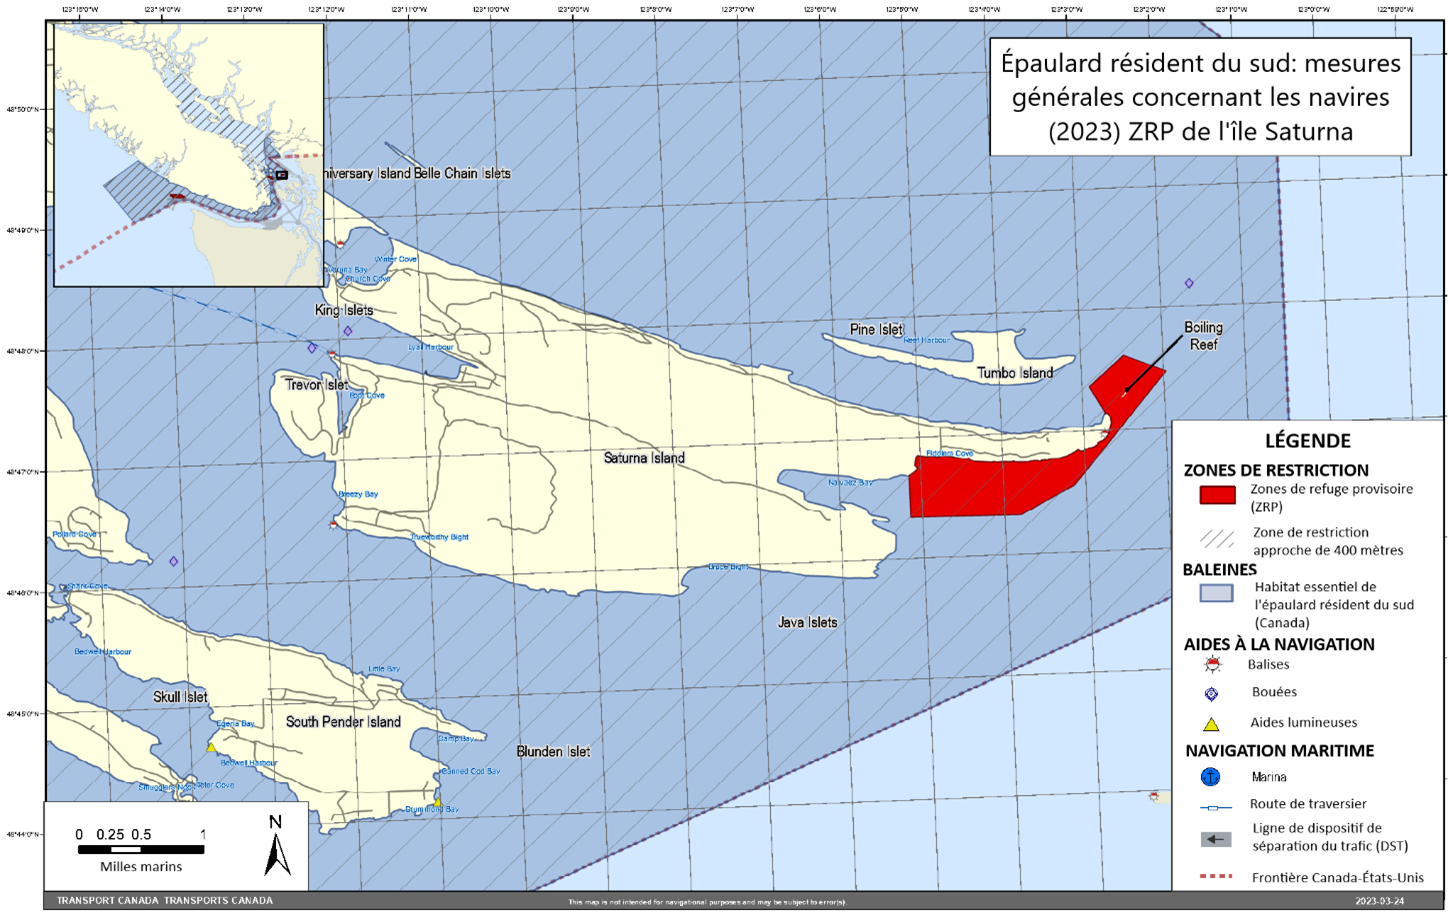 Carte rectangulaire grise, 
                     bleue et jaune. L'ile Saturna, est une zone de refuge provisoire, 
                     est illustrée en rouge. Ceci fait partie des mesures générales 
                     concernant les navires dans le dossier des épaulards résidents du sud.